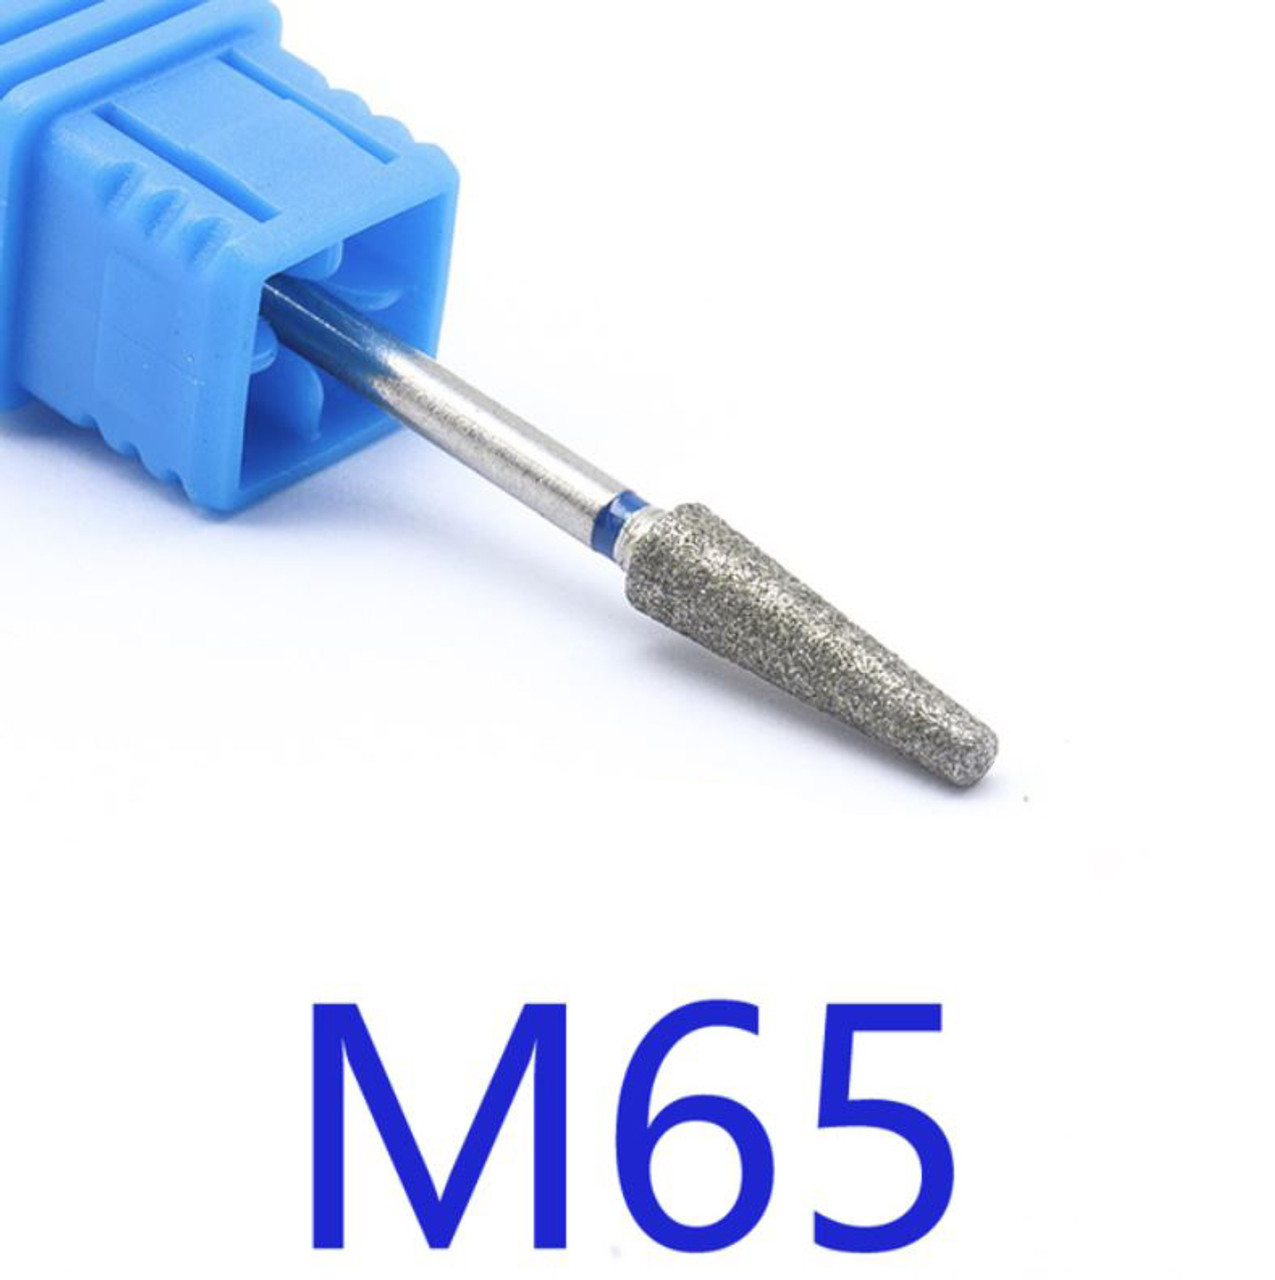 NDi beauty Diamond Drill Bit - 3/32 shank (MEDIUM) - M65